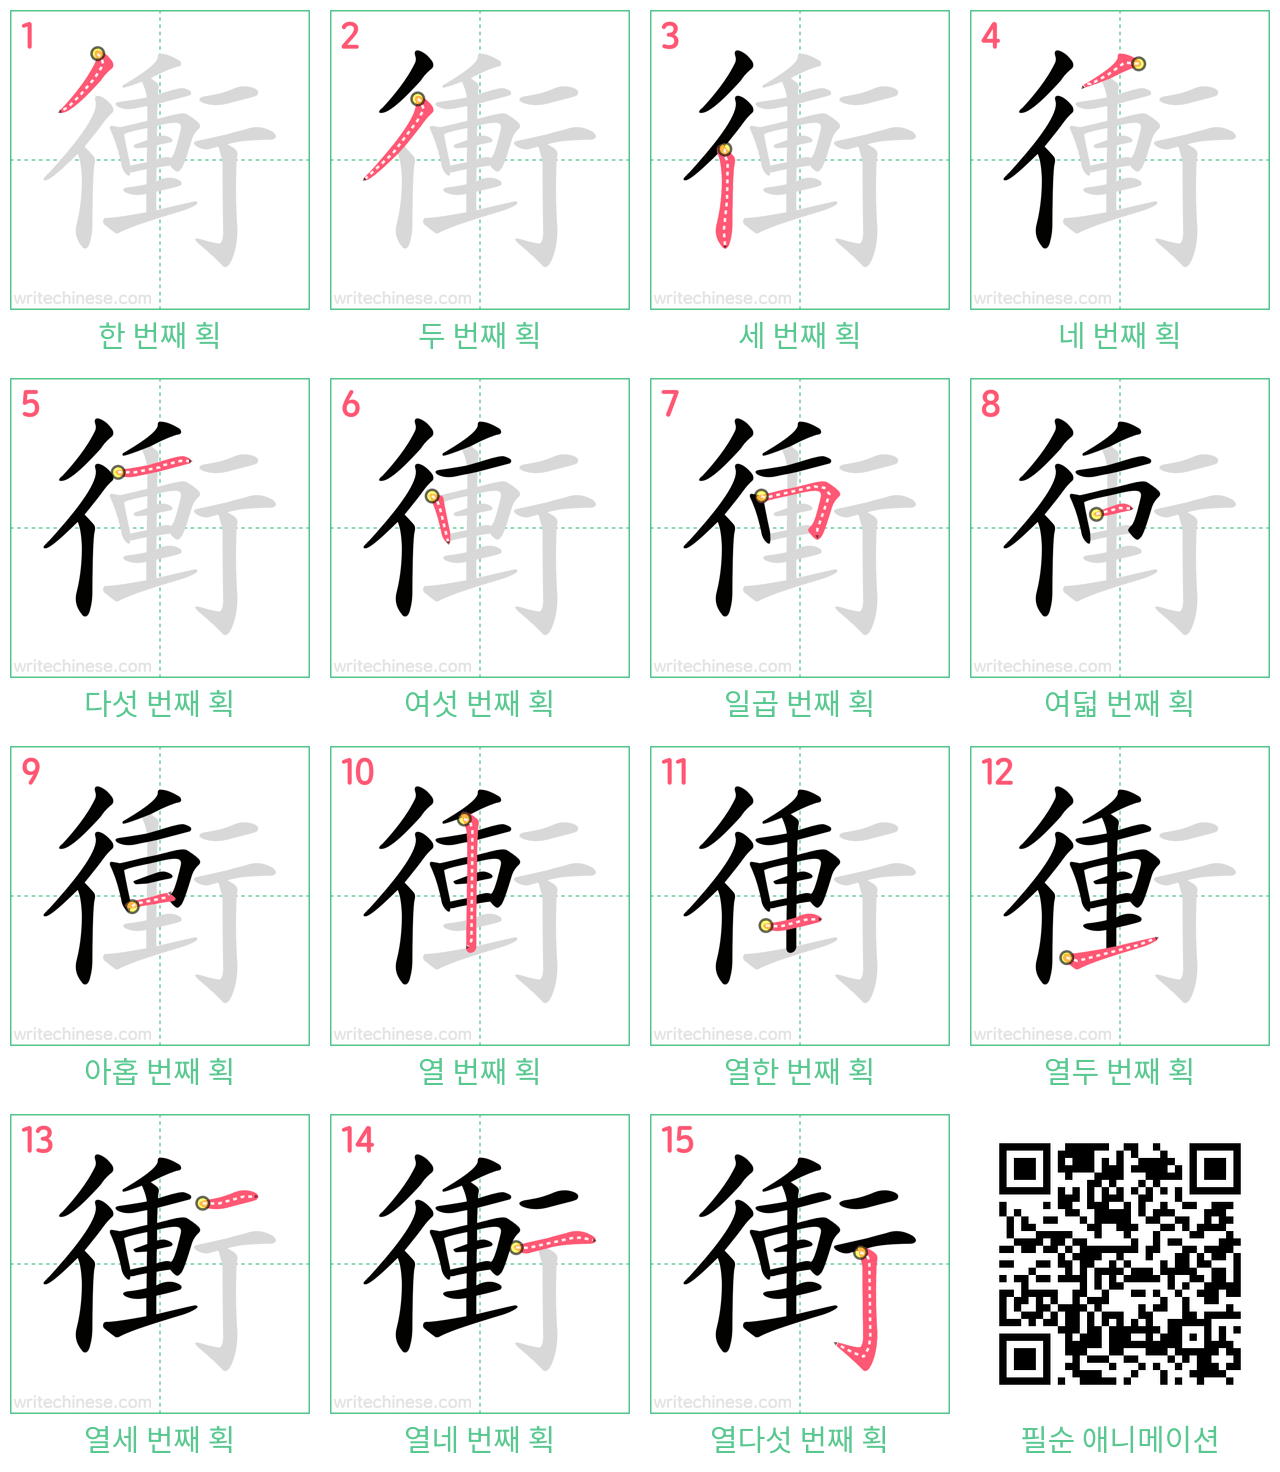 衝 step-by-step stroke order diagrams